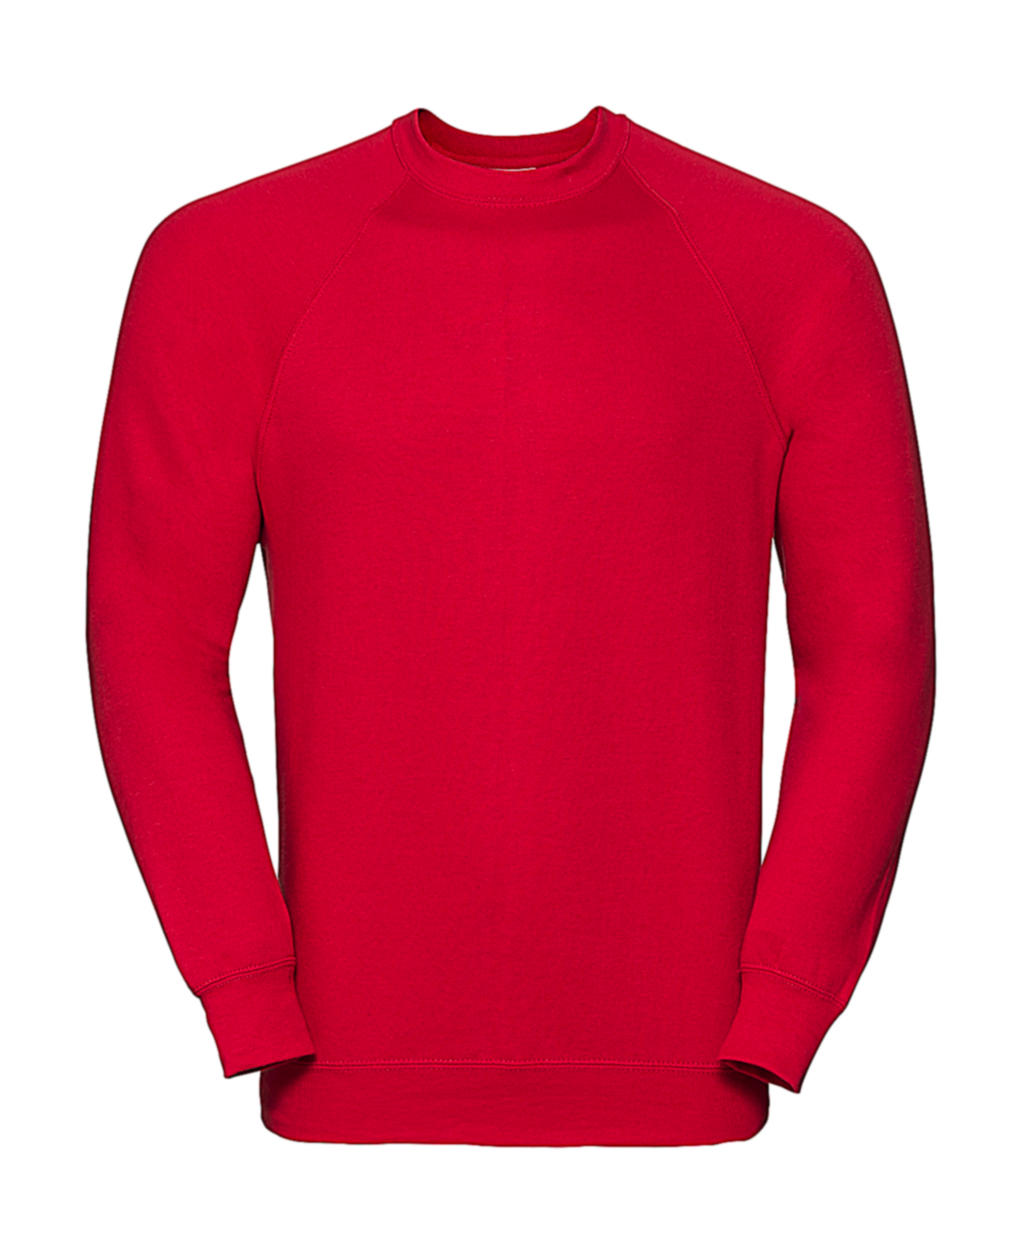  Classic Raglan Sweatshirt in Farbe Classic Red